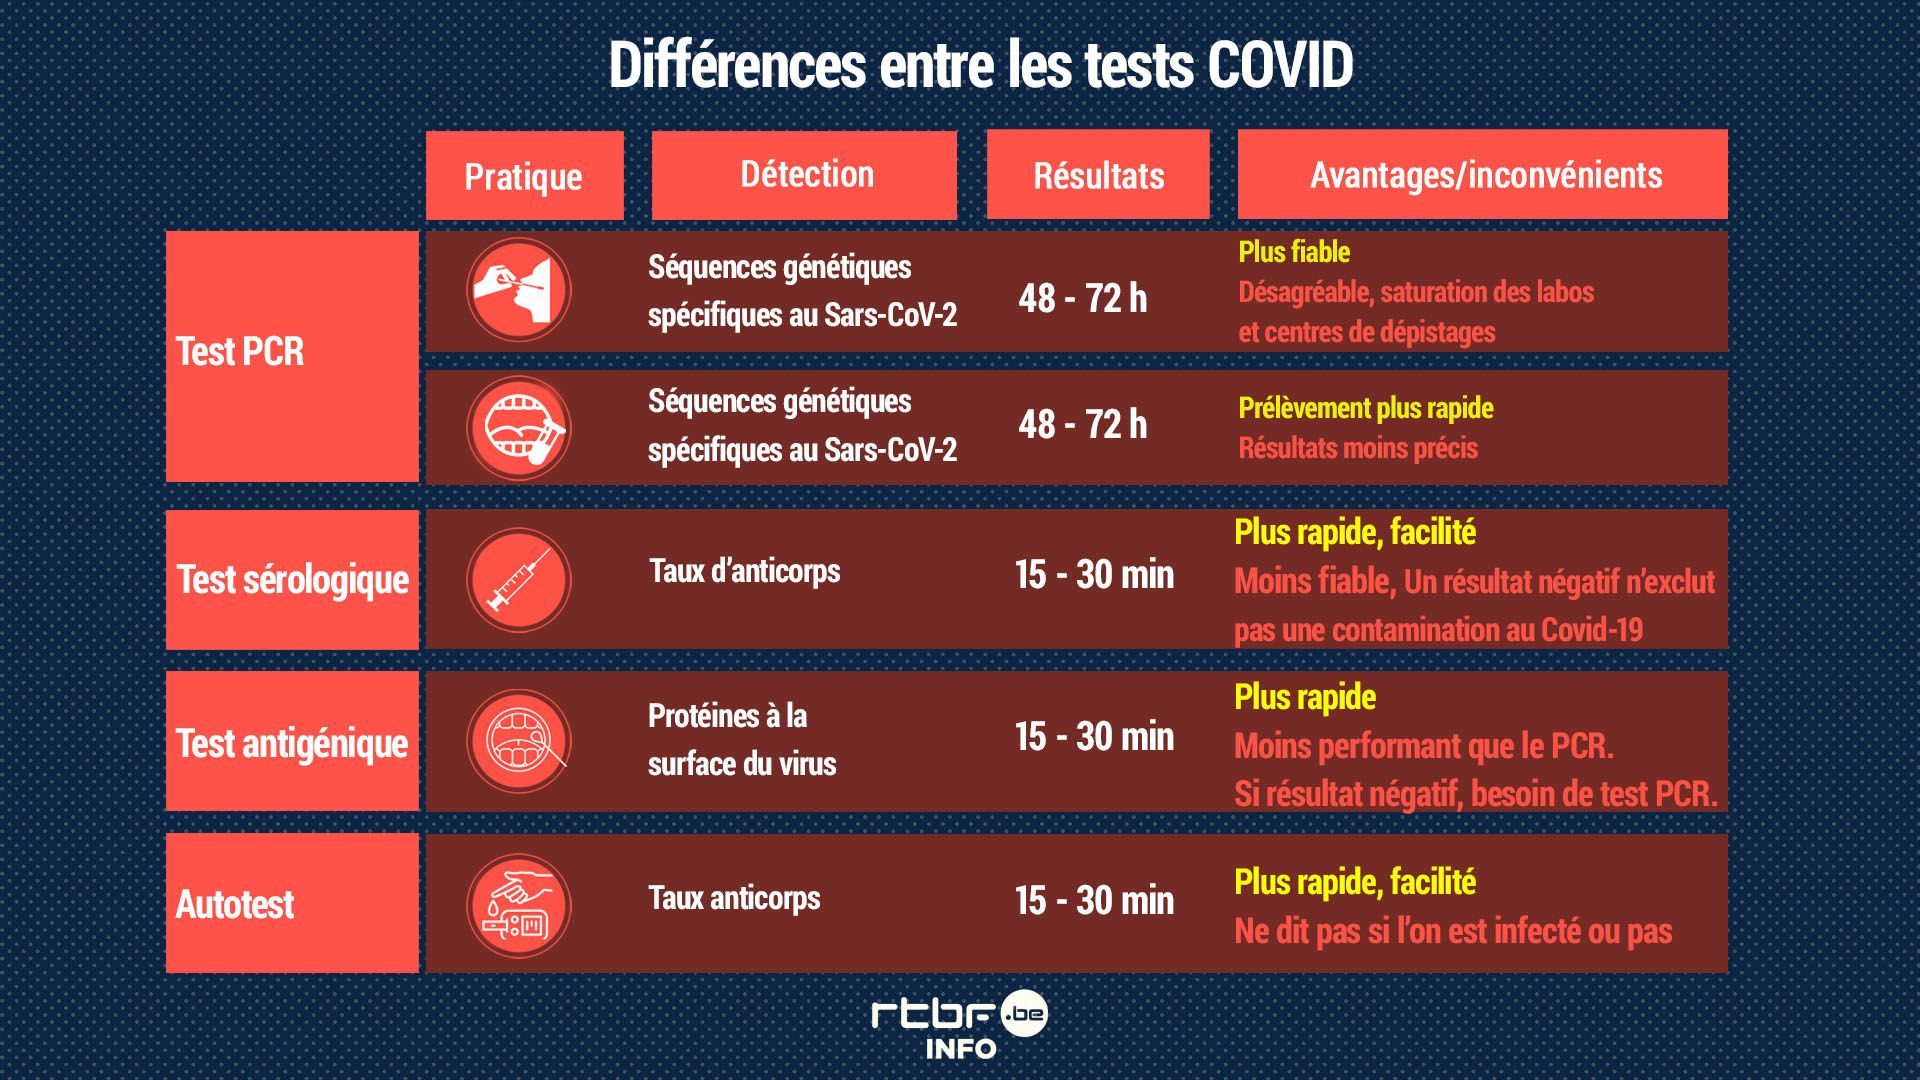 Dépistage Covid-19 : quels sont les différents types de tests et quels sont leurs avantages et inconvénients? (infographie)